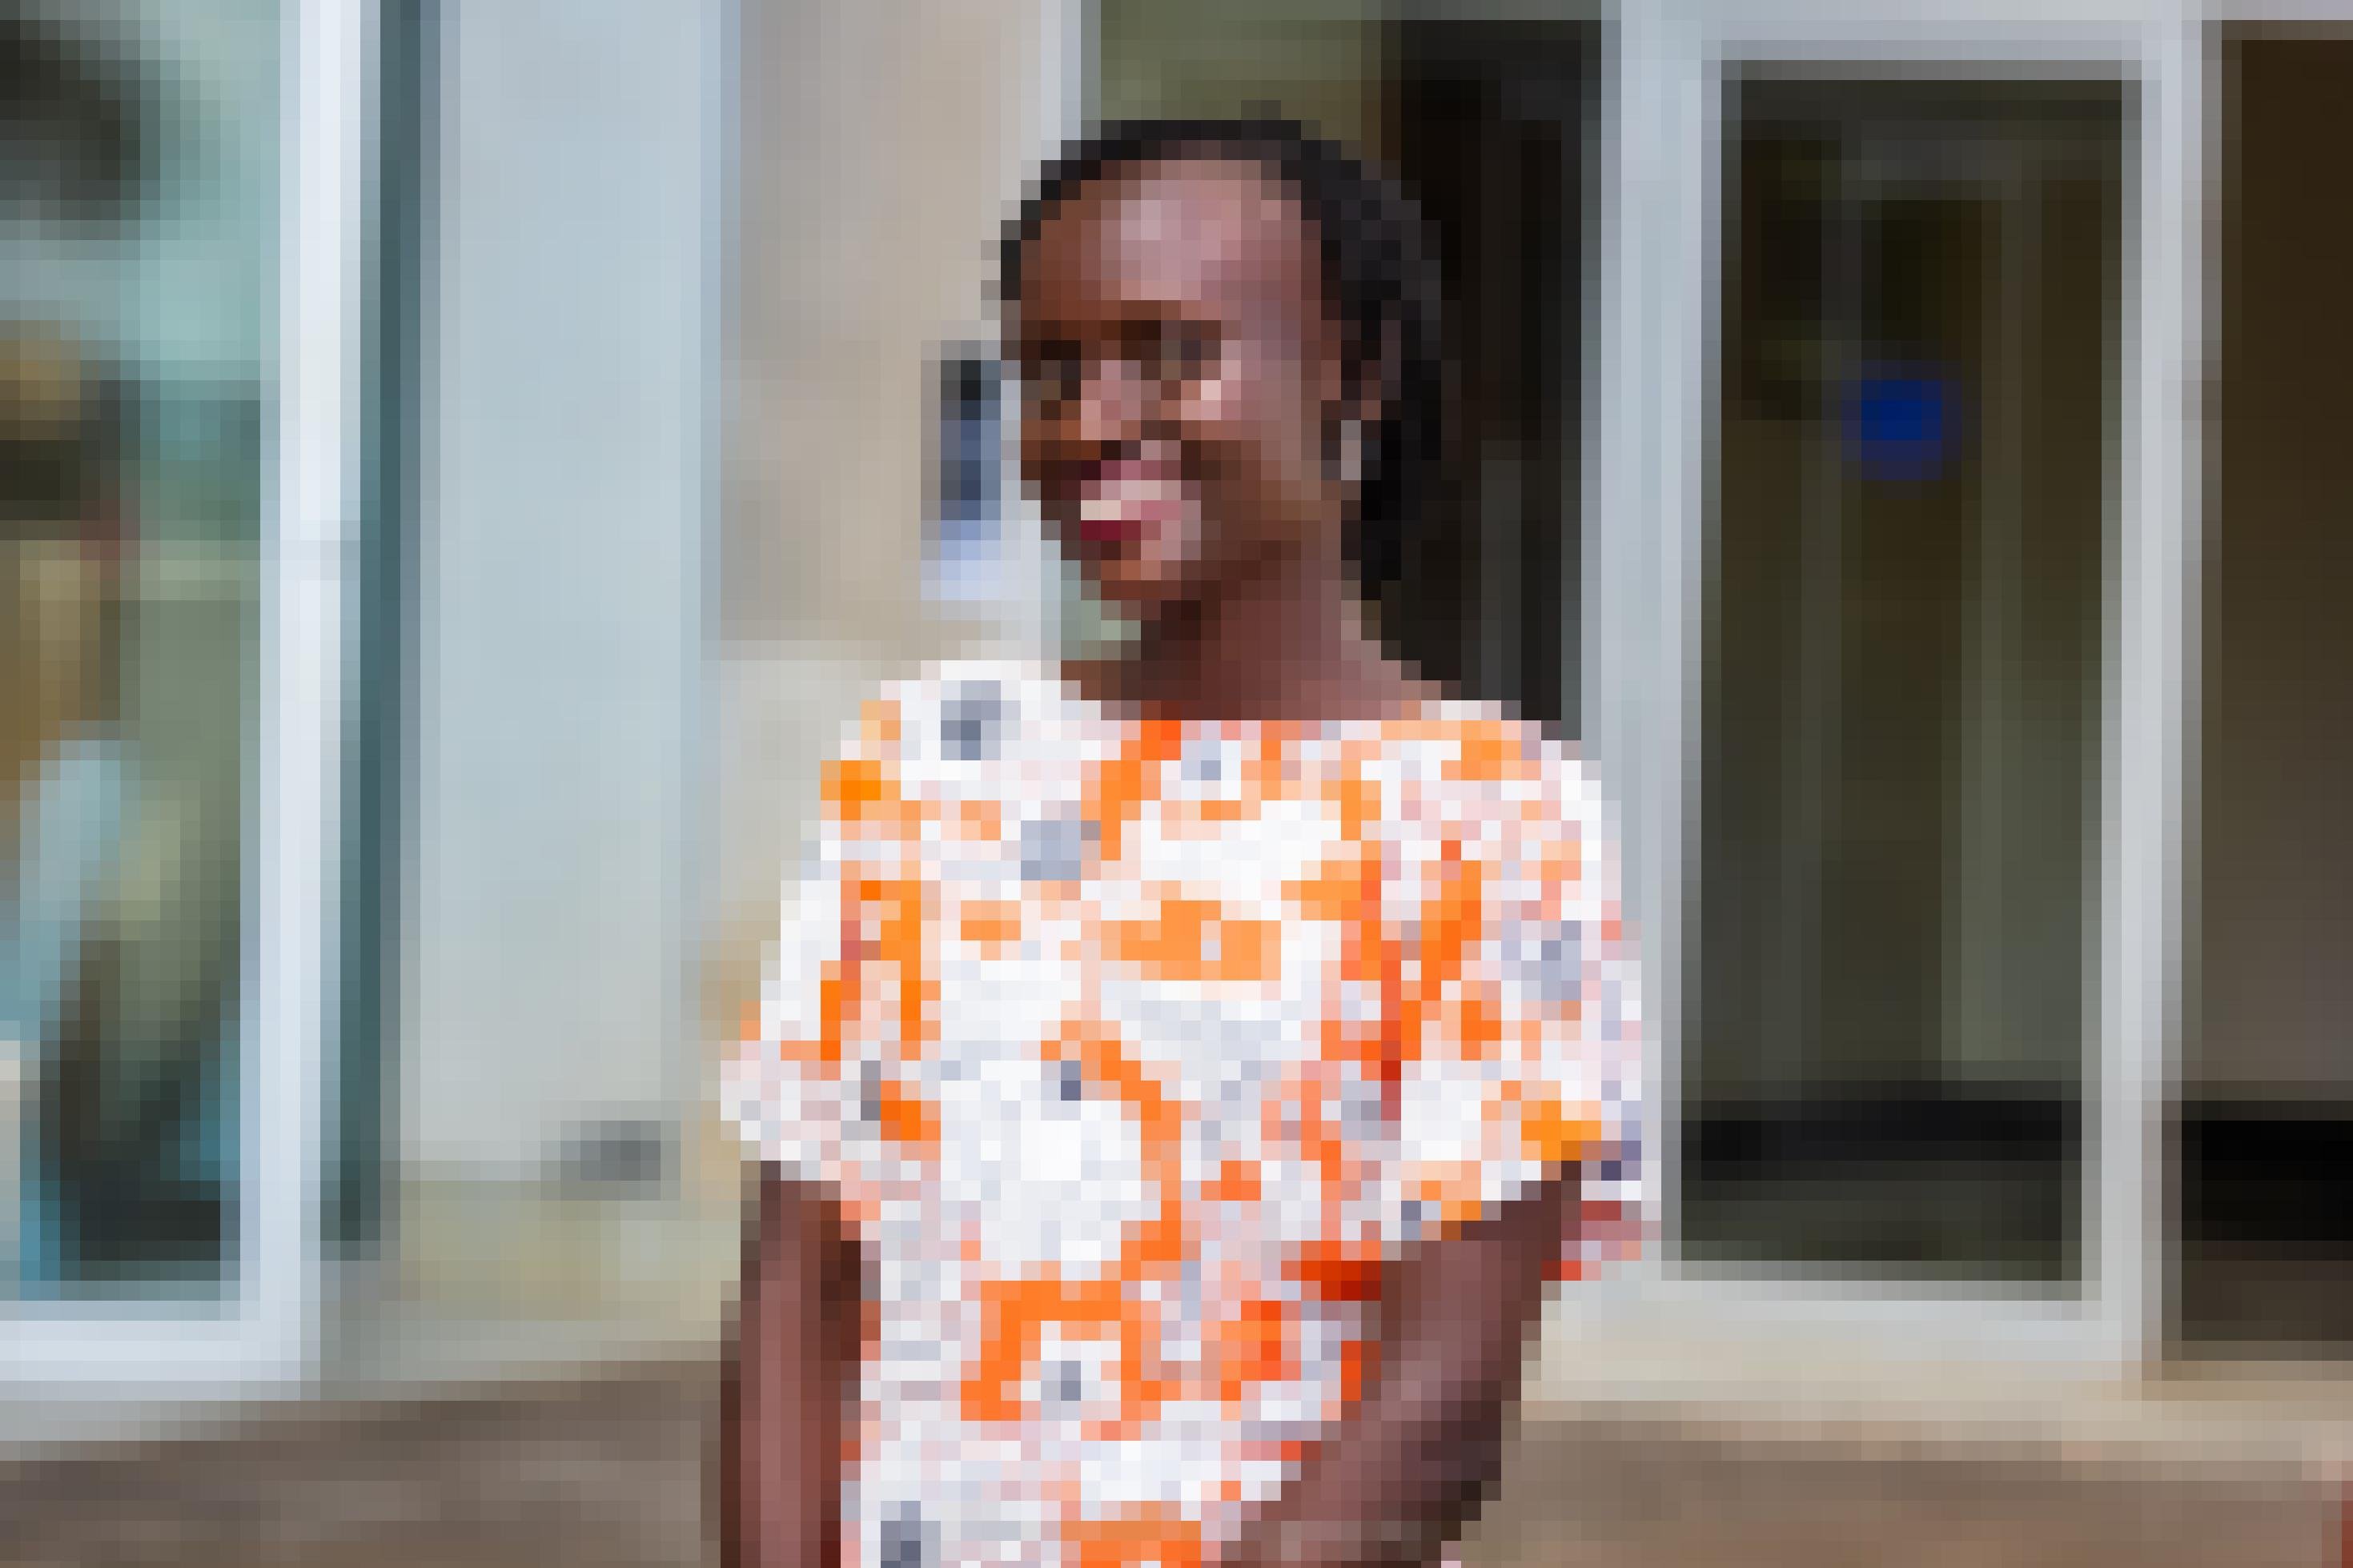 Zu sehen ist die 29-jährige ugandische Aktivistin Maria Alesi. Ein Halbkörperporträt, sie trägt ein buntes Kleid und lacht, blickt offen in die Kamera.